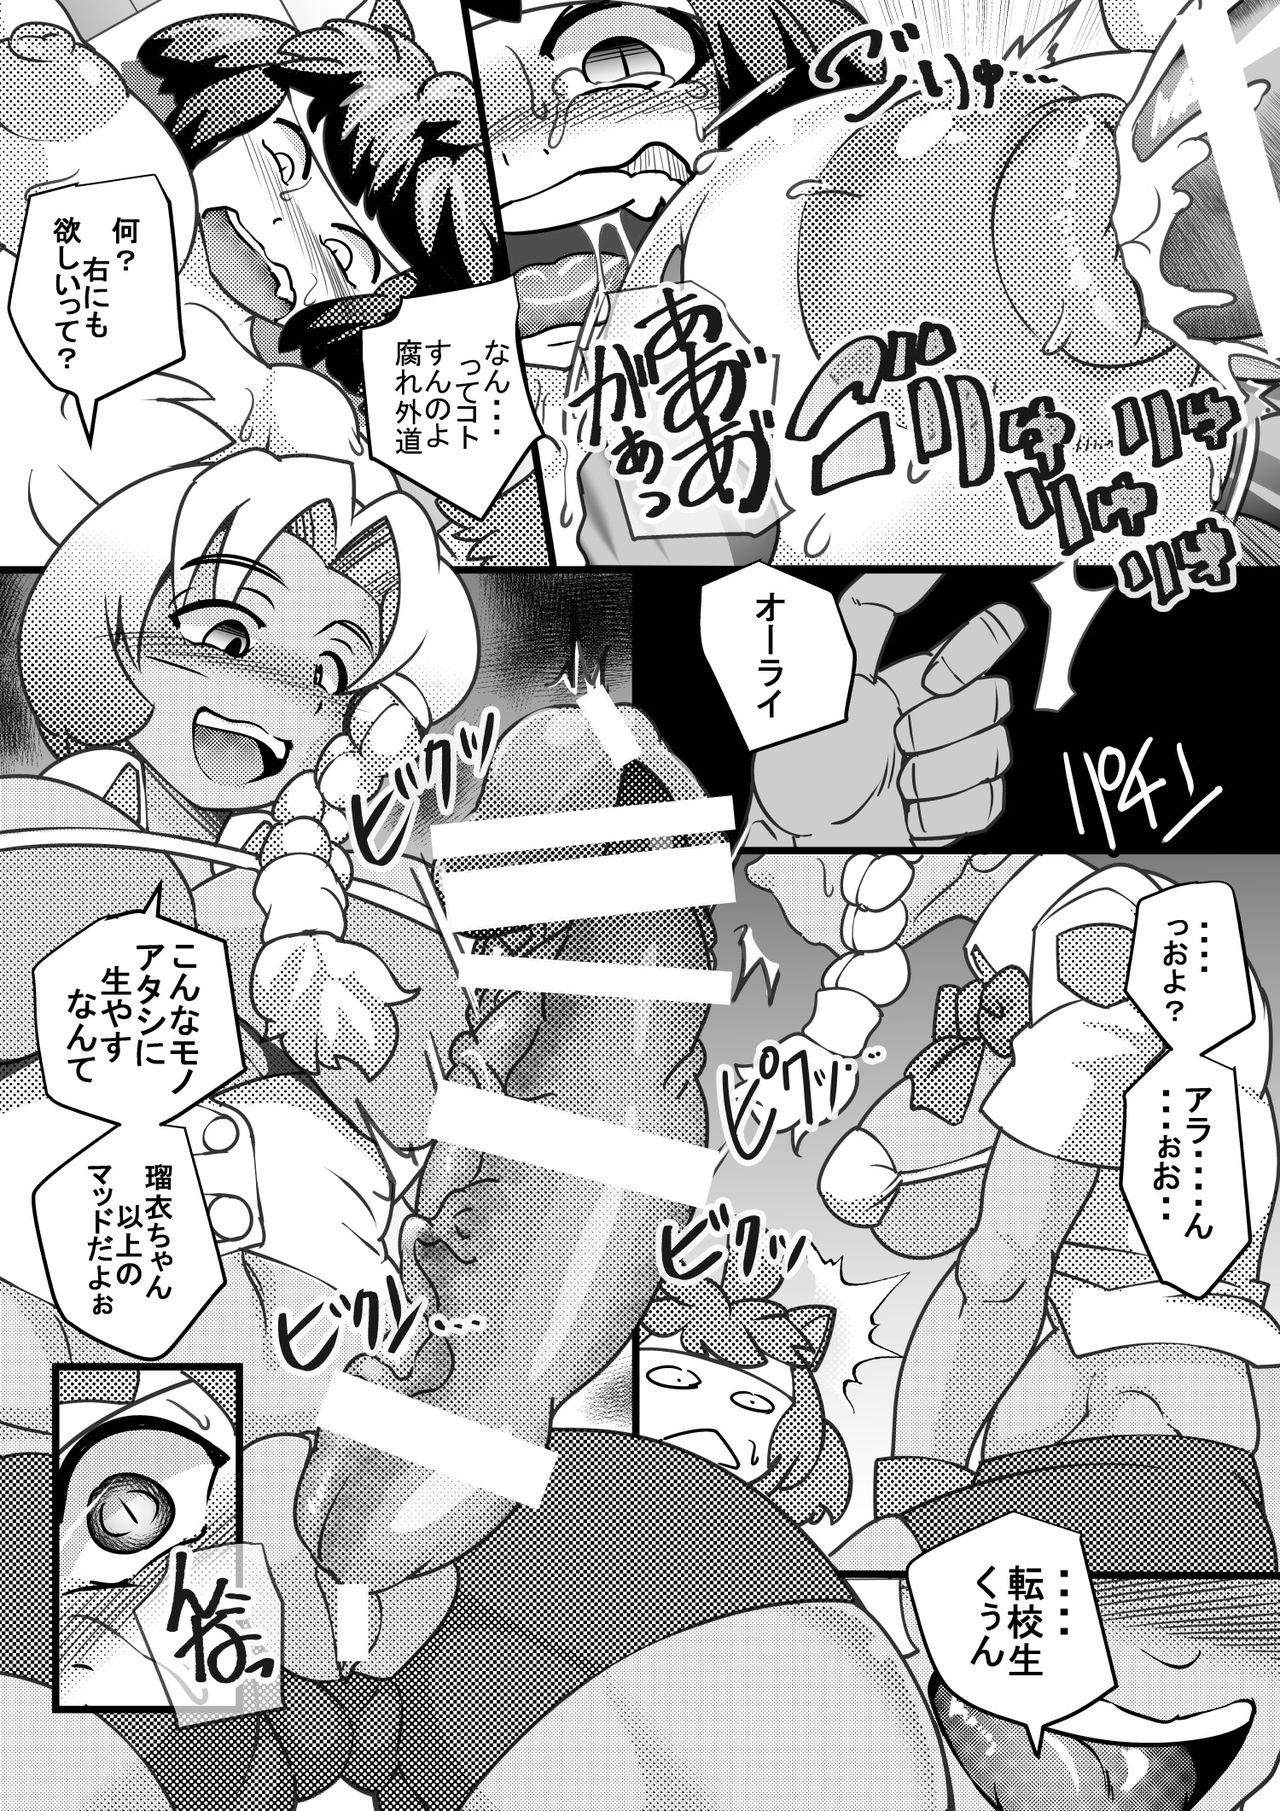 Domination Uchi no Joseito Zenin Haramaseta Kedamono ga Anta no Gakuen ni Iku Rashii yo? 4 Butts - Page 6